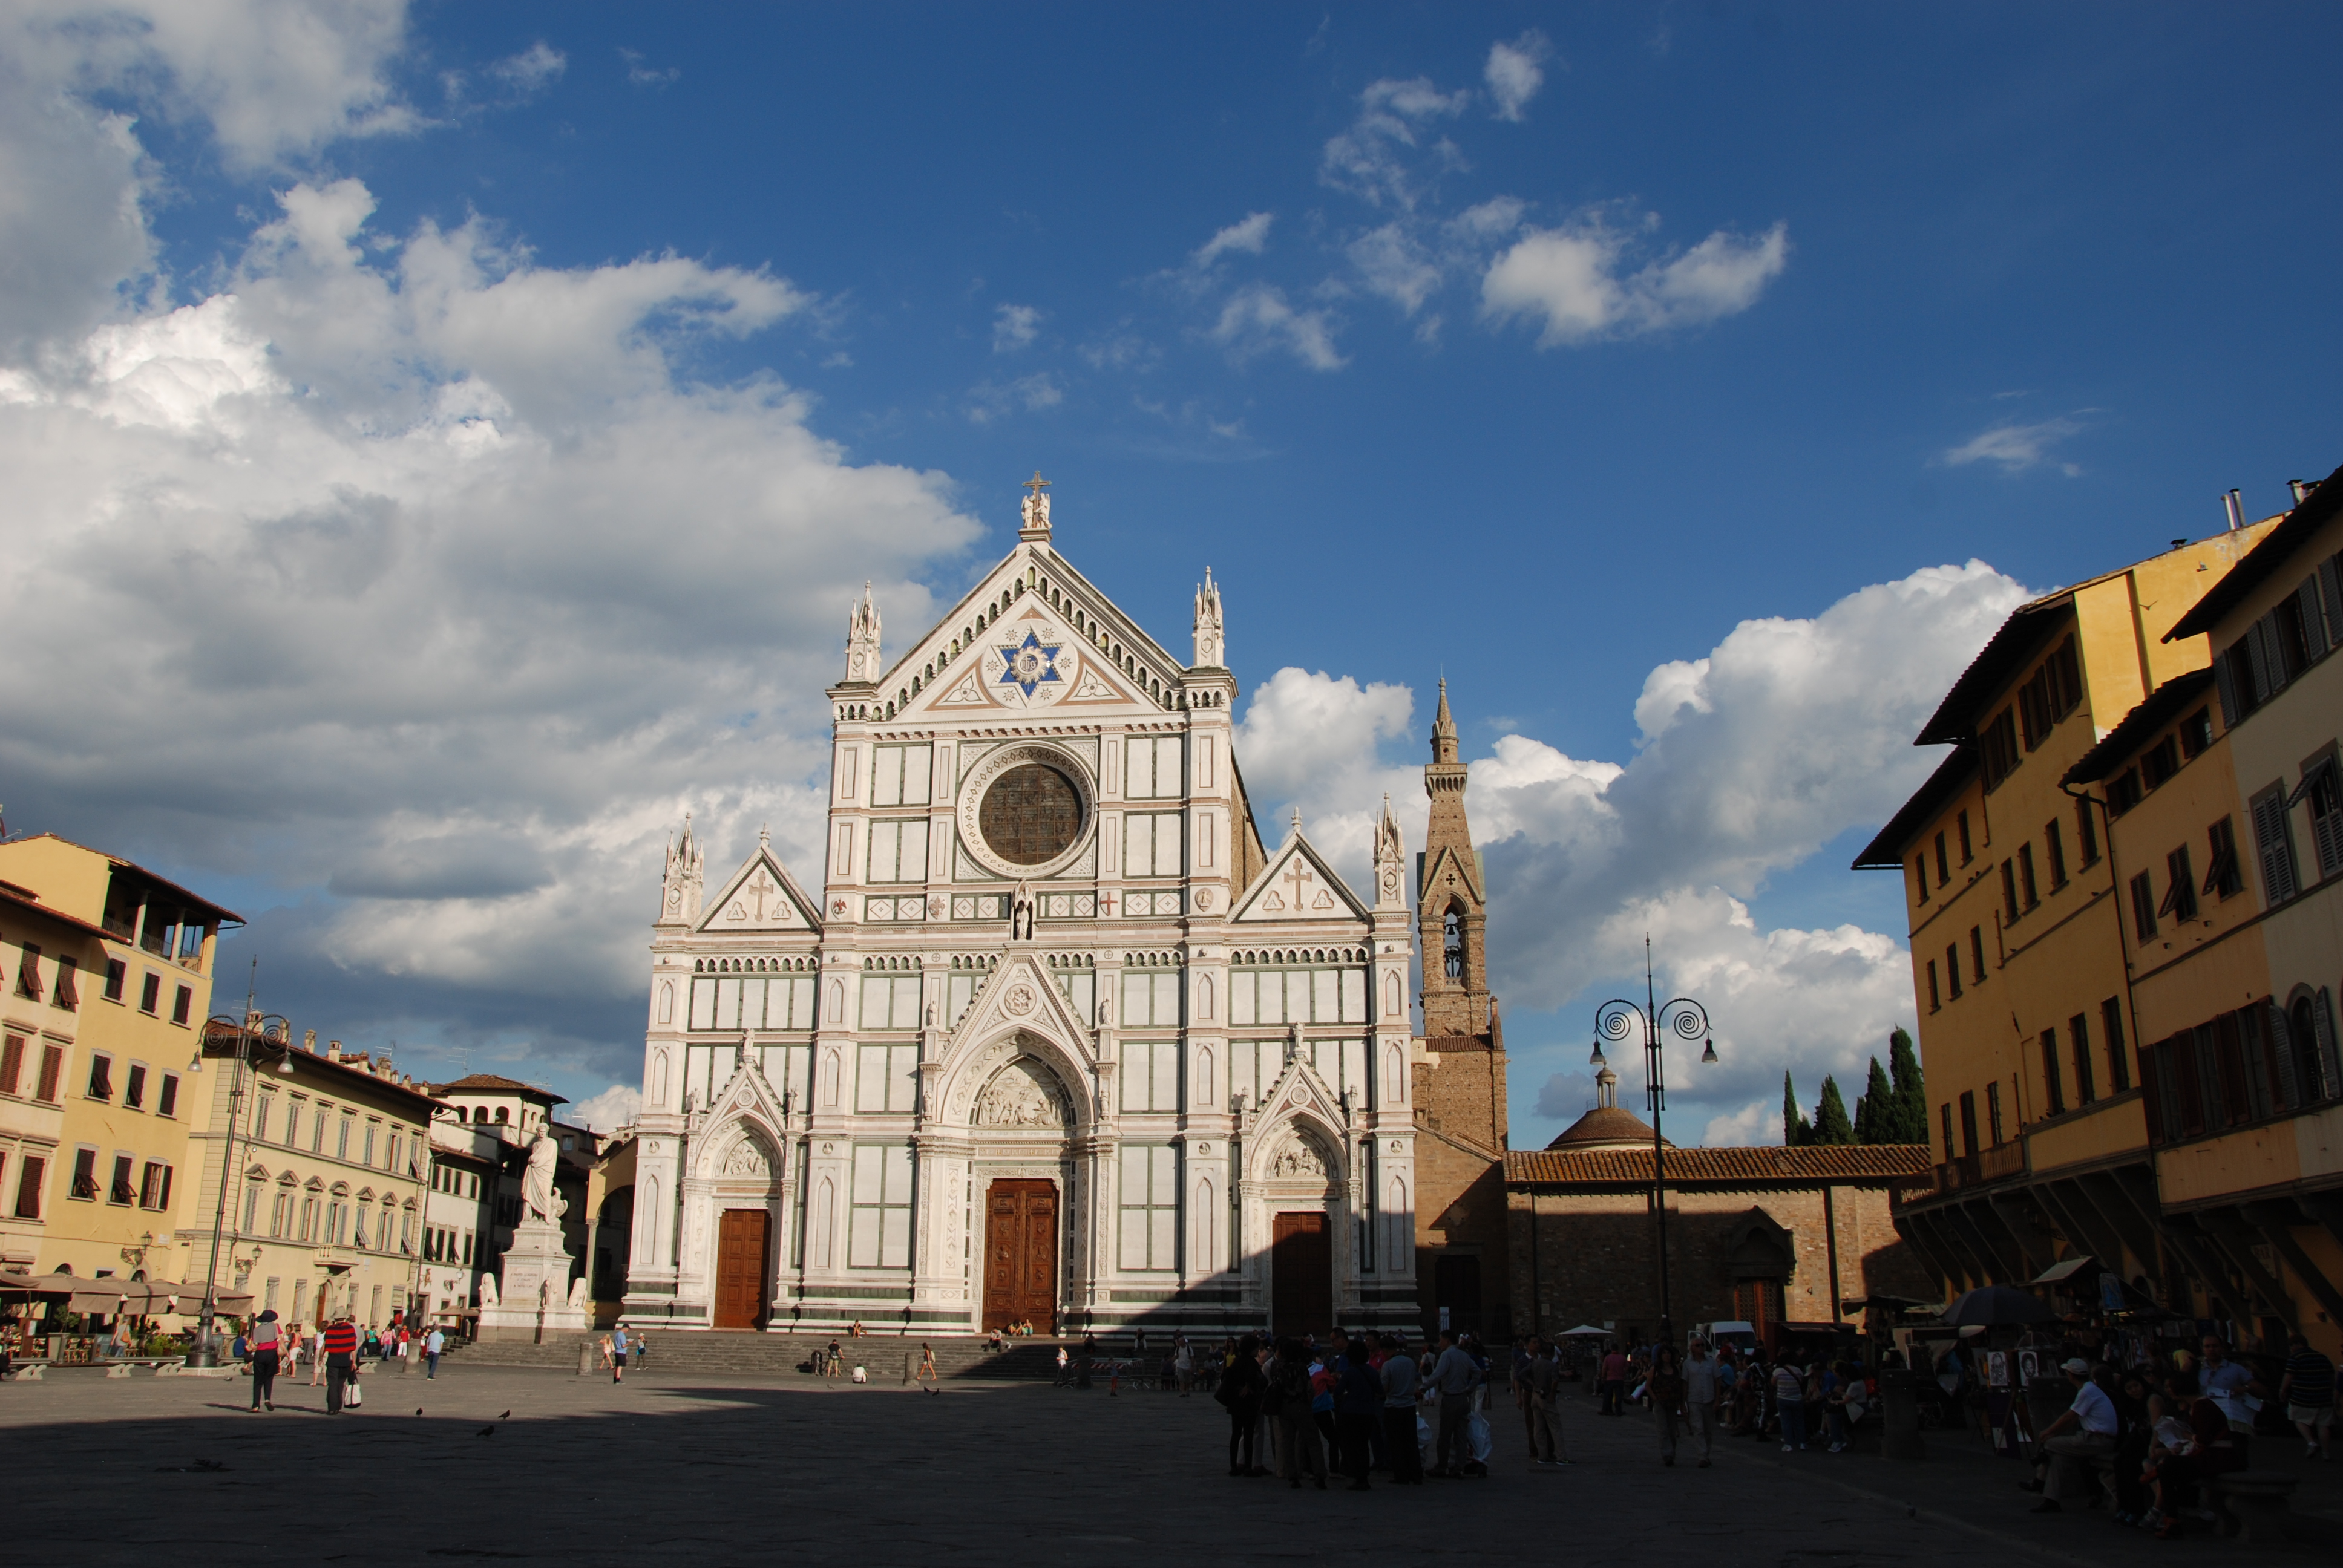 沿着小巷往回走,我们回到圣十字教堂,圣十字教堂广场是佛罗伦萨最古老